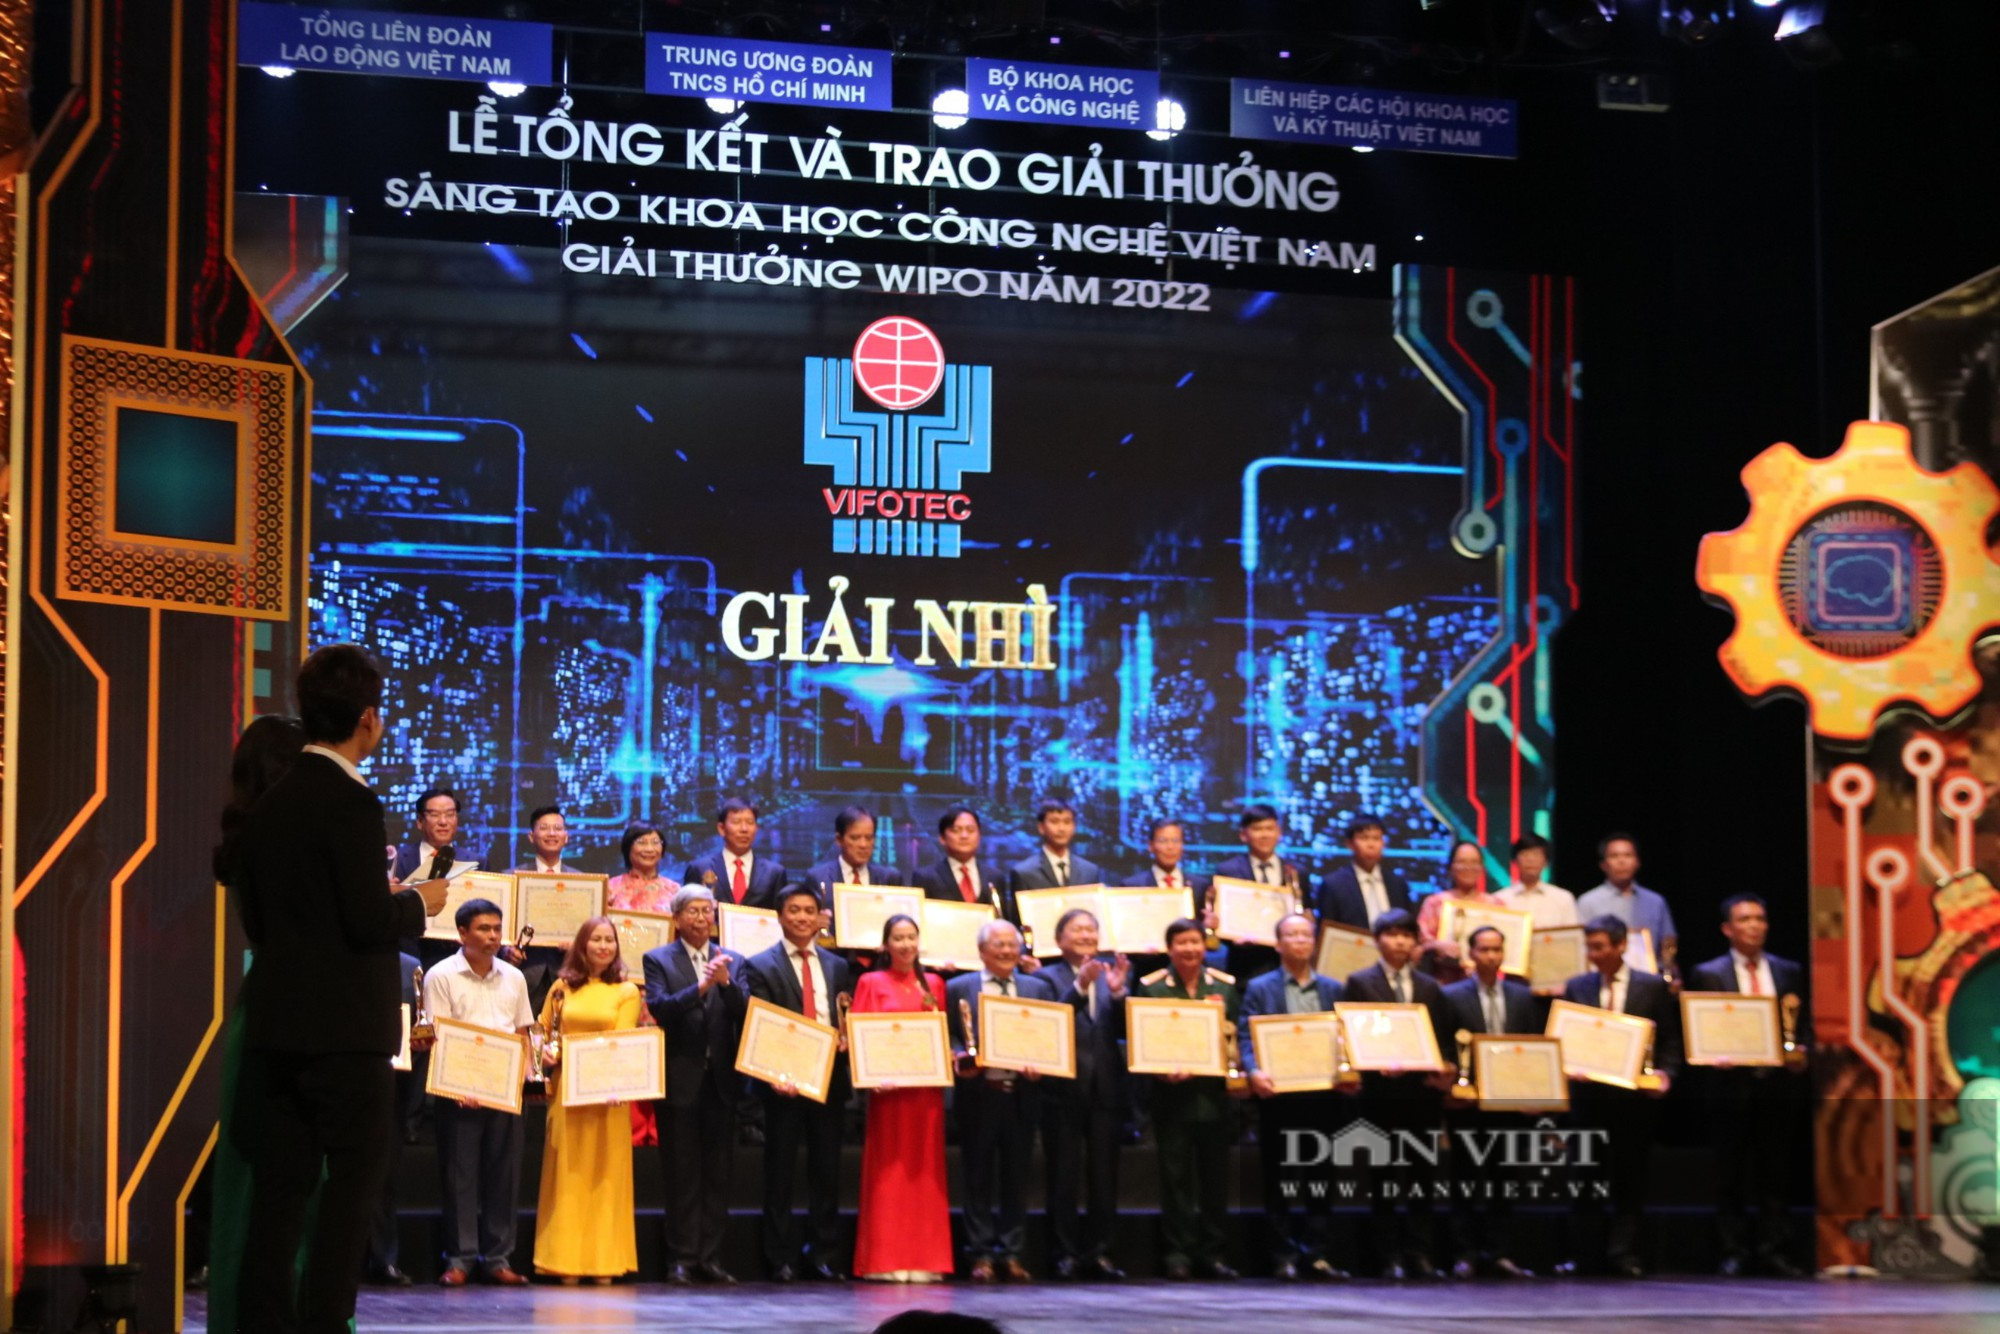 Tôn vinh 43 công trình xuất sắc nhận giải thưởng Sáng tạo khoa học công nghệ Việt Nam 2022 - Ảnh 3.